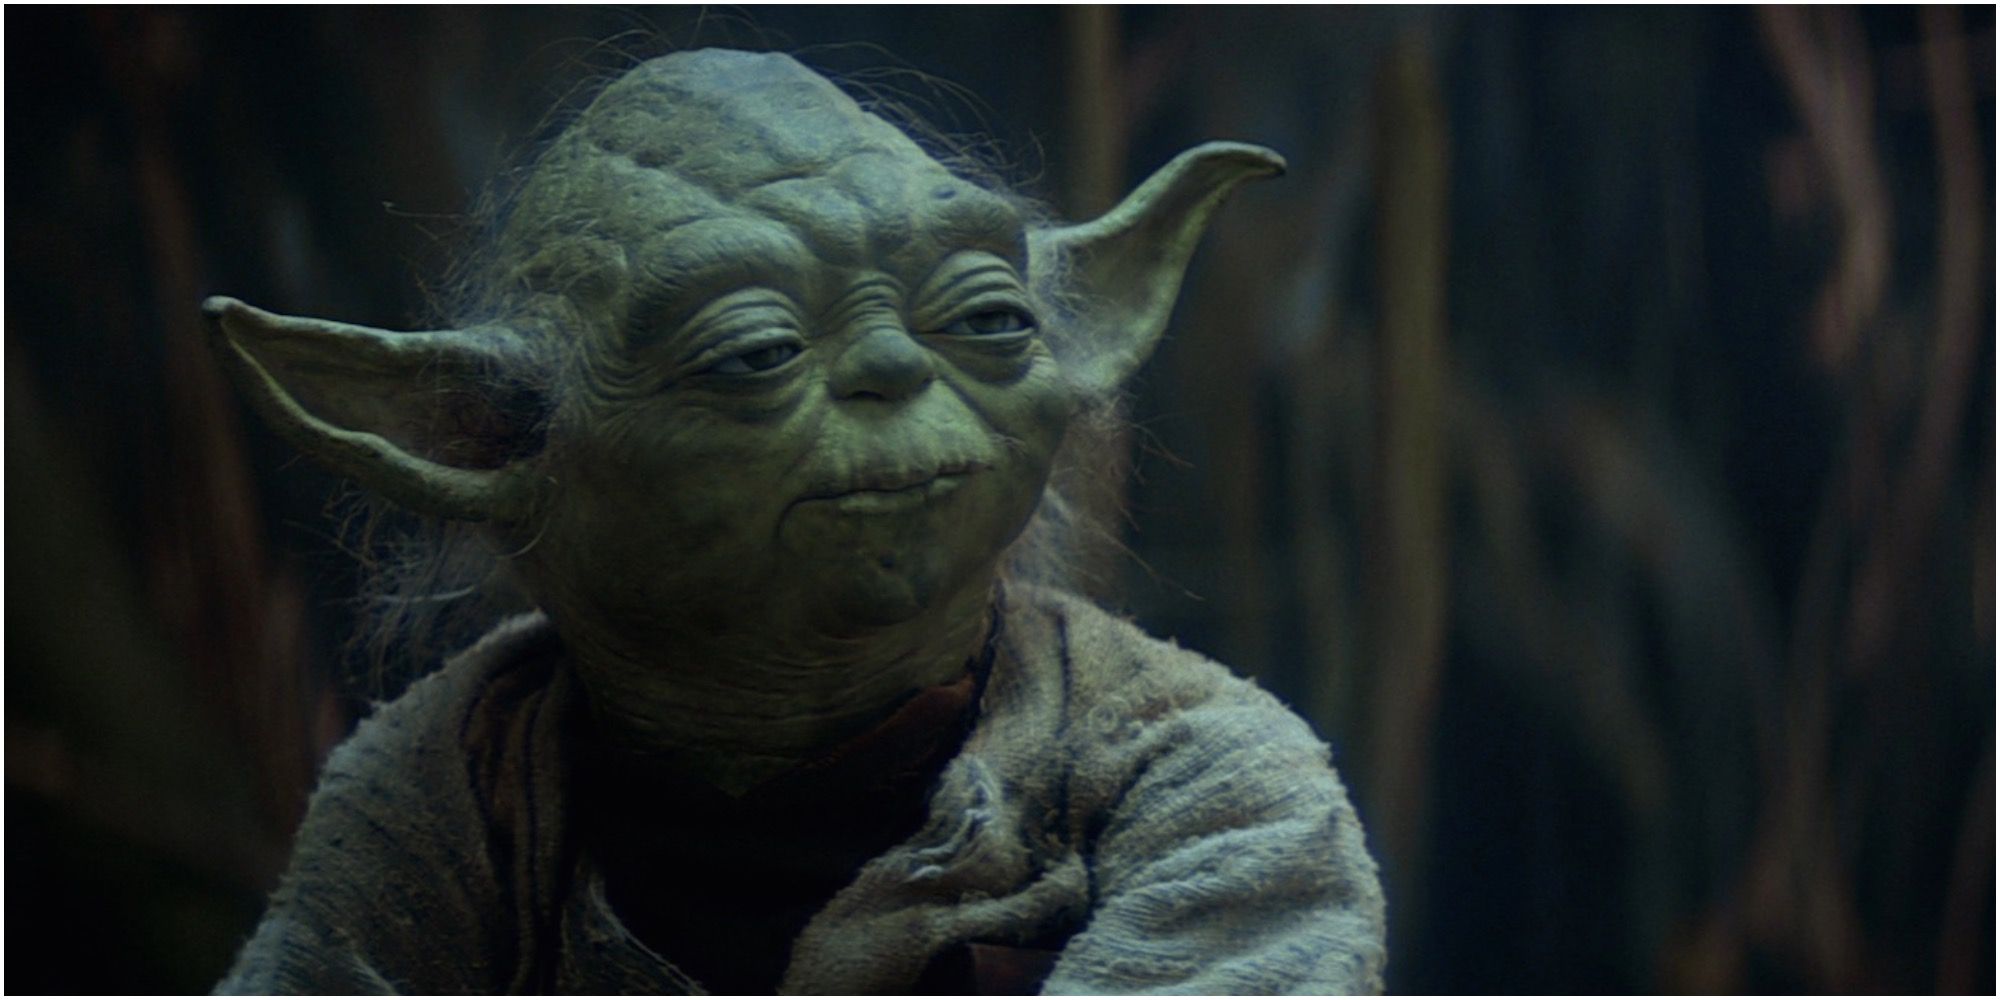 Yoda instructs Luke Skywalker